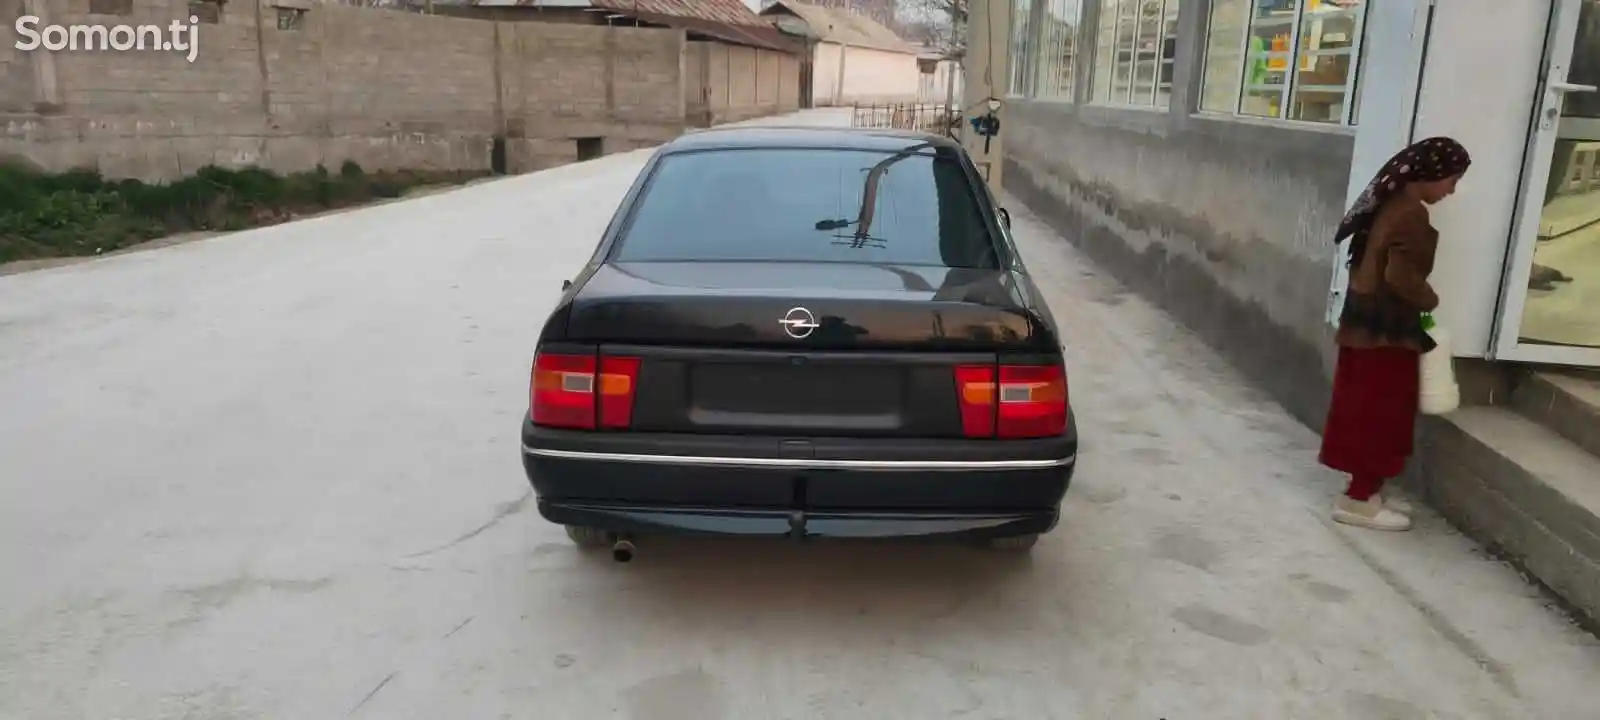 Opel Vectra A, 1994-10